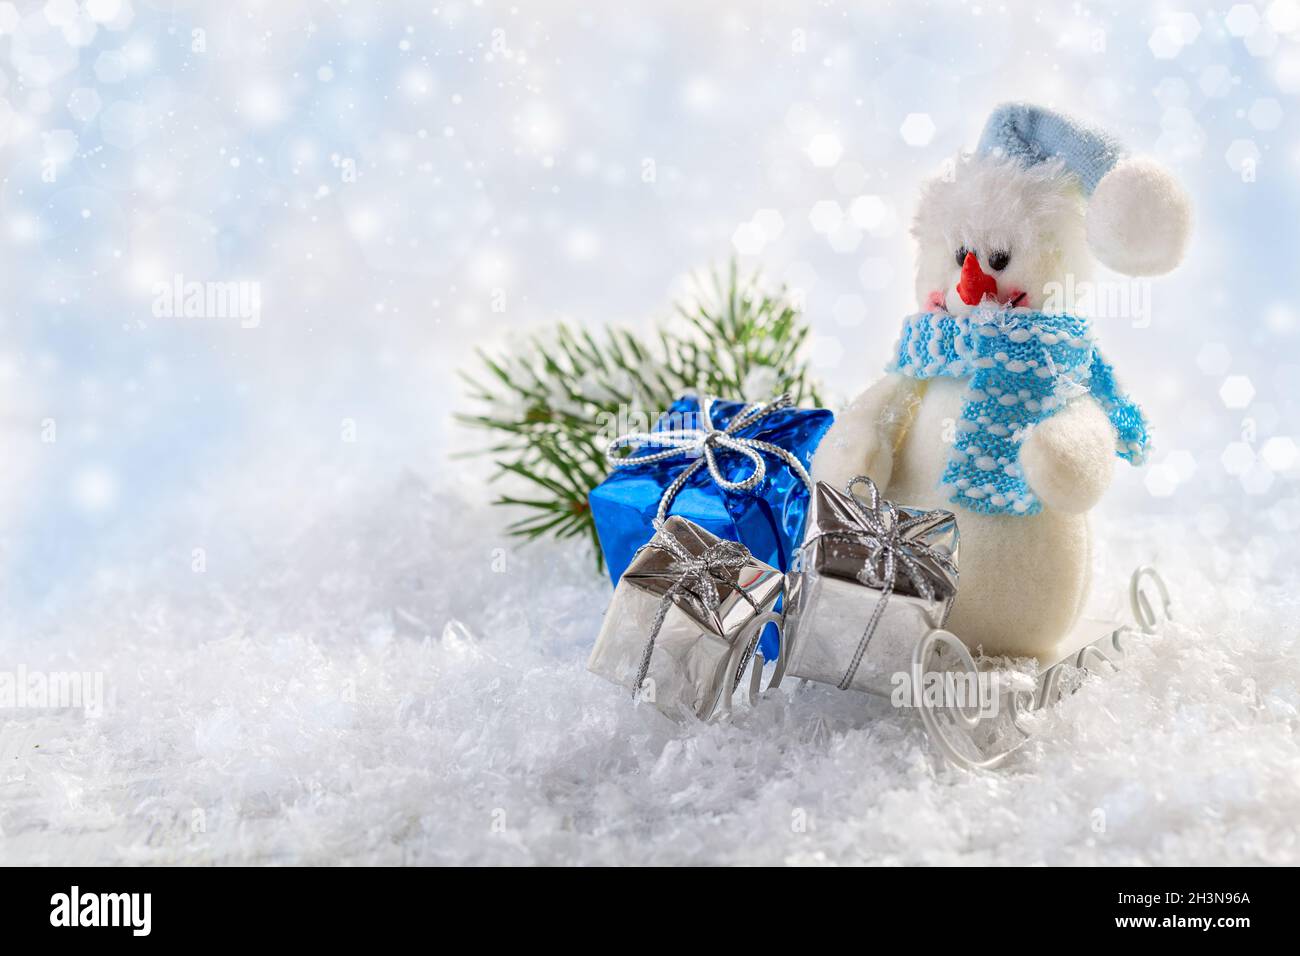 Festive Christmas card with a snowman. Stock Photo